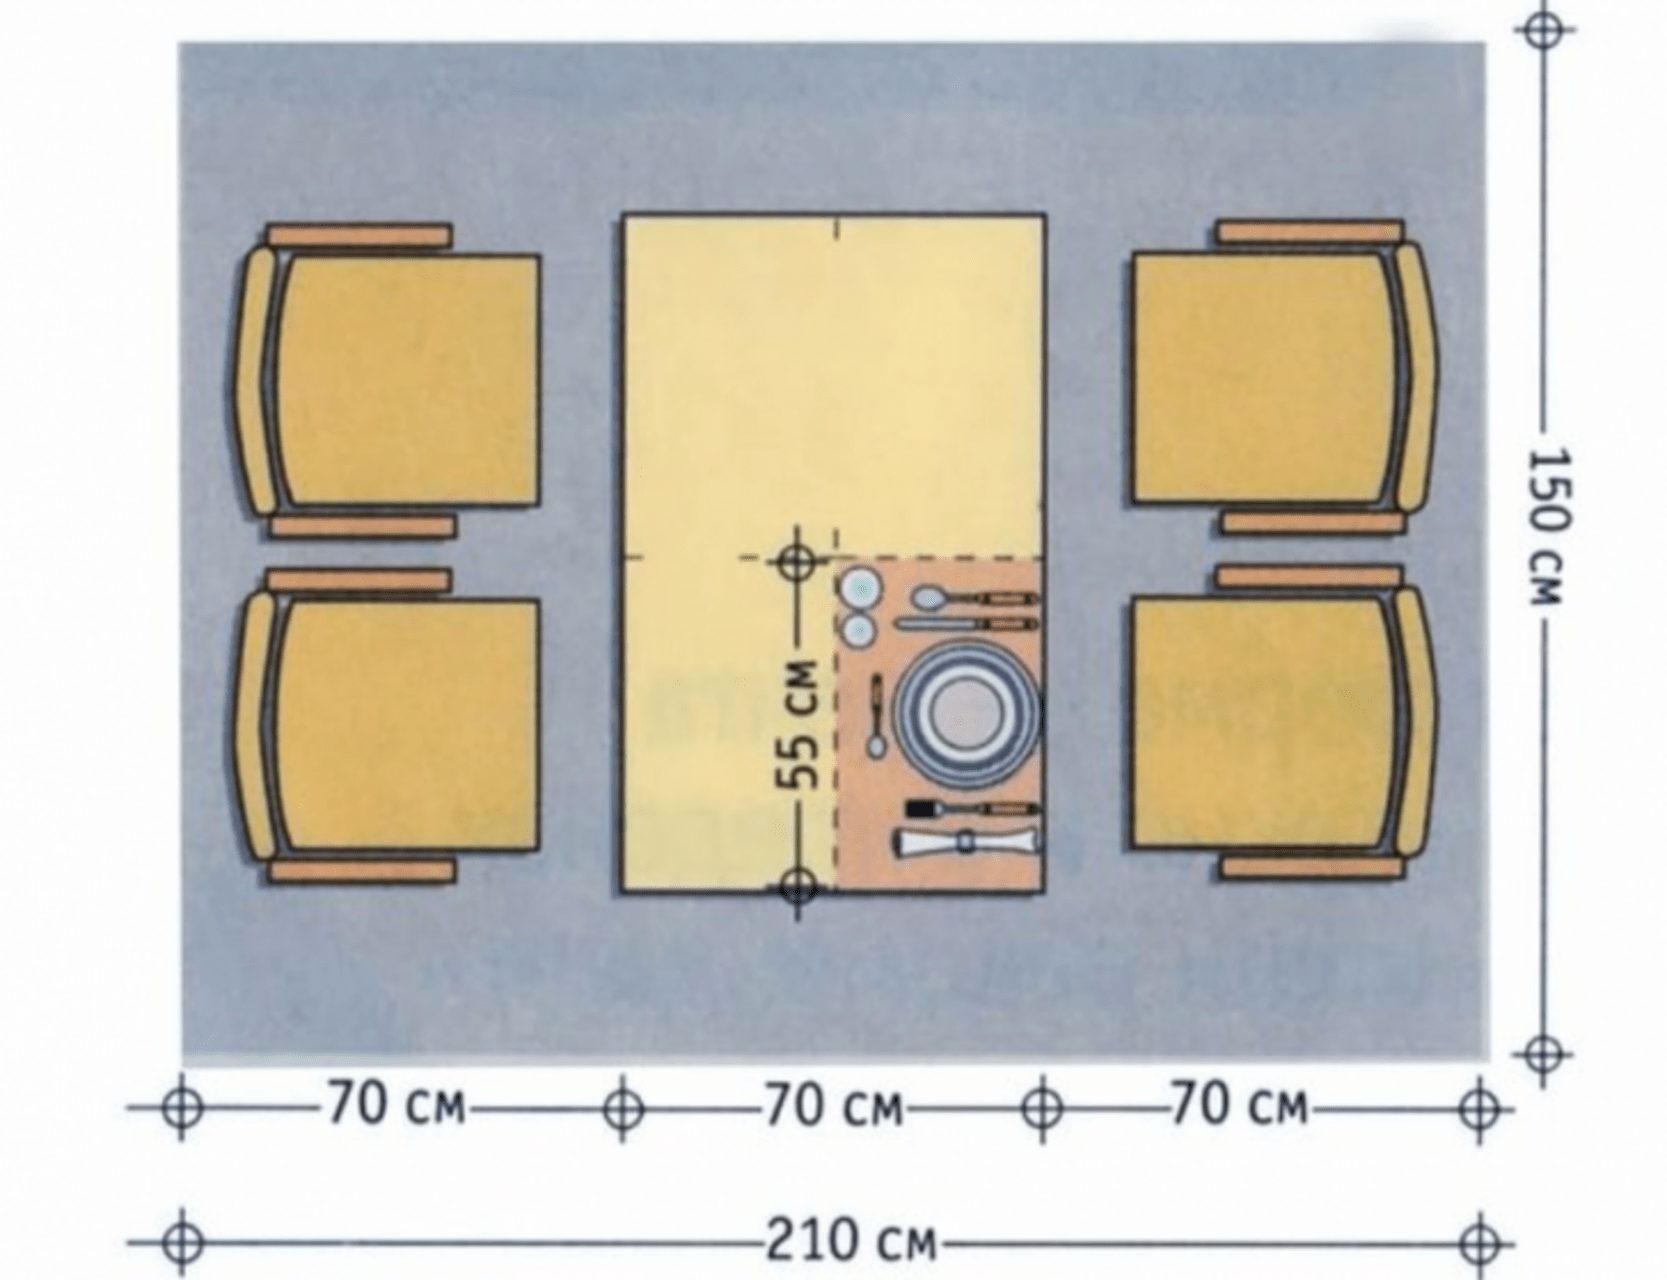 Размеры обеденных столов разных форм, советы по выбору мебели 15 - ДиванеТТо